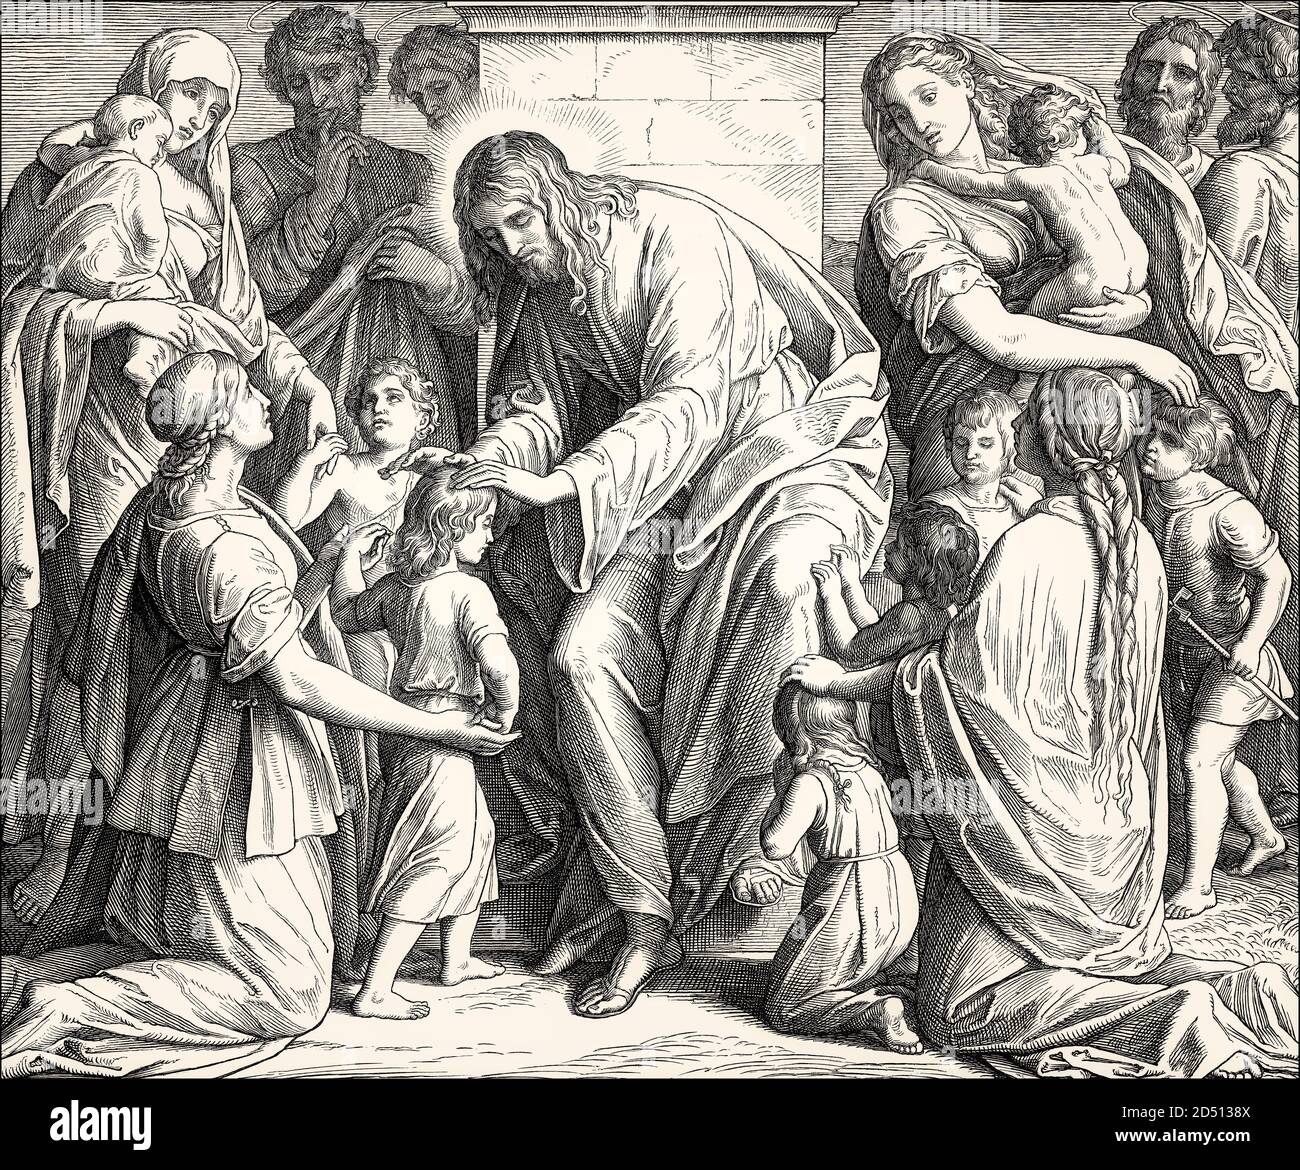 Jesus' teachings referring to little children, New Testament, by Julius Schnorr von Carolsfeld, 1860 Stock Photo